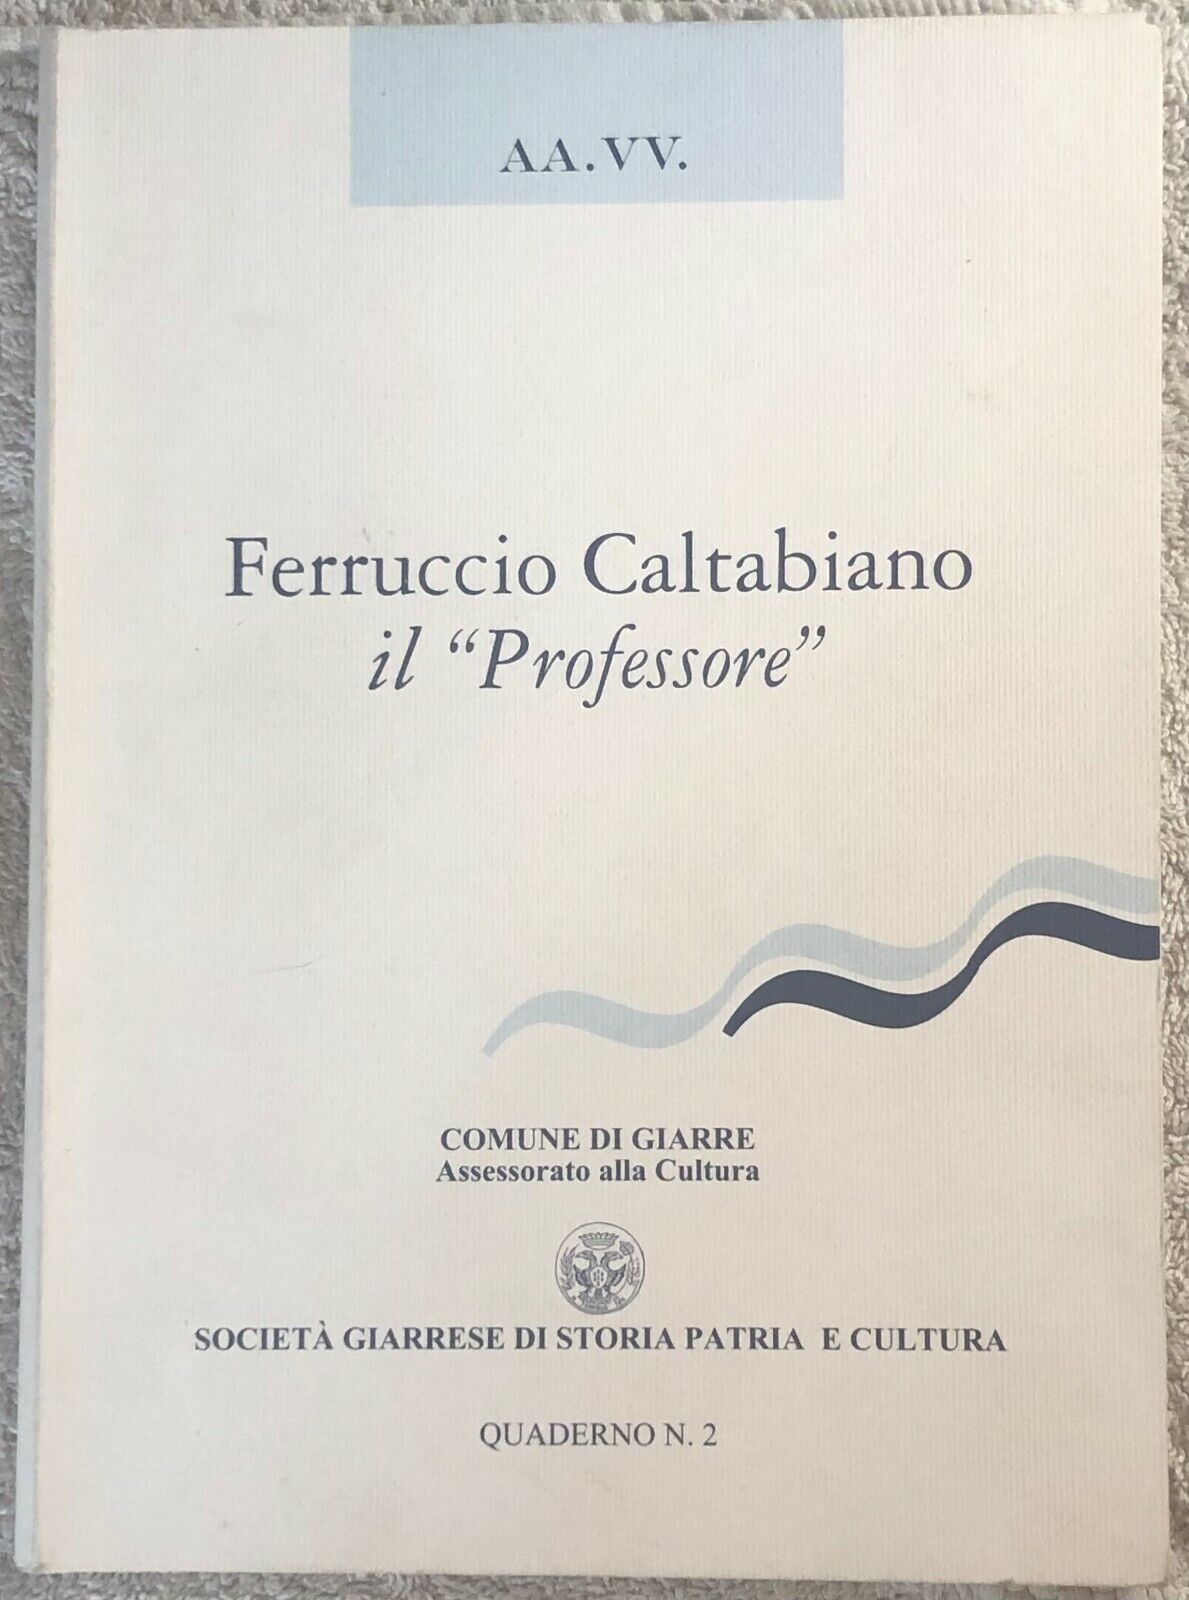 Ferruccio Caltabiano il Profesore Quaderno n. 2 di Aa.vv.,  2001,  Societ? Giarr